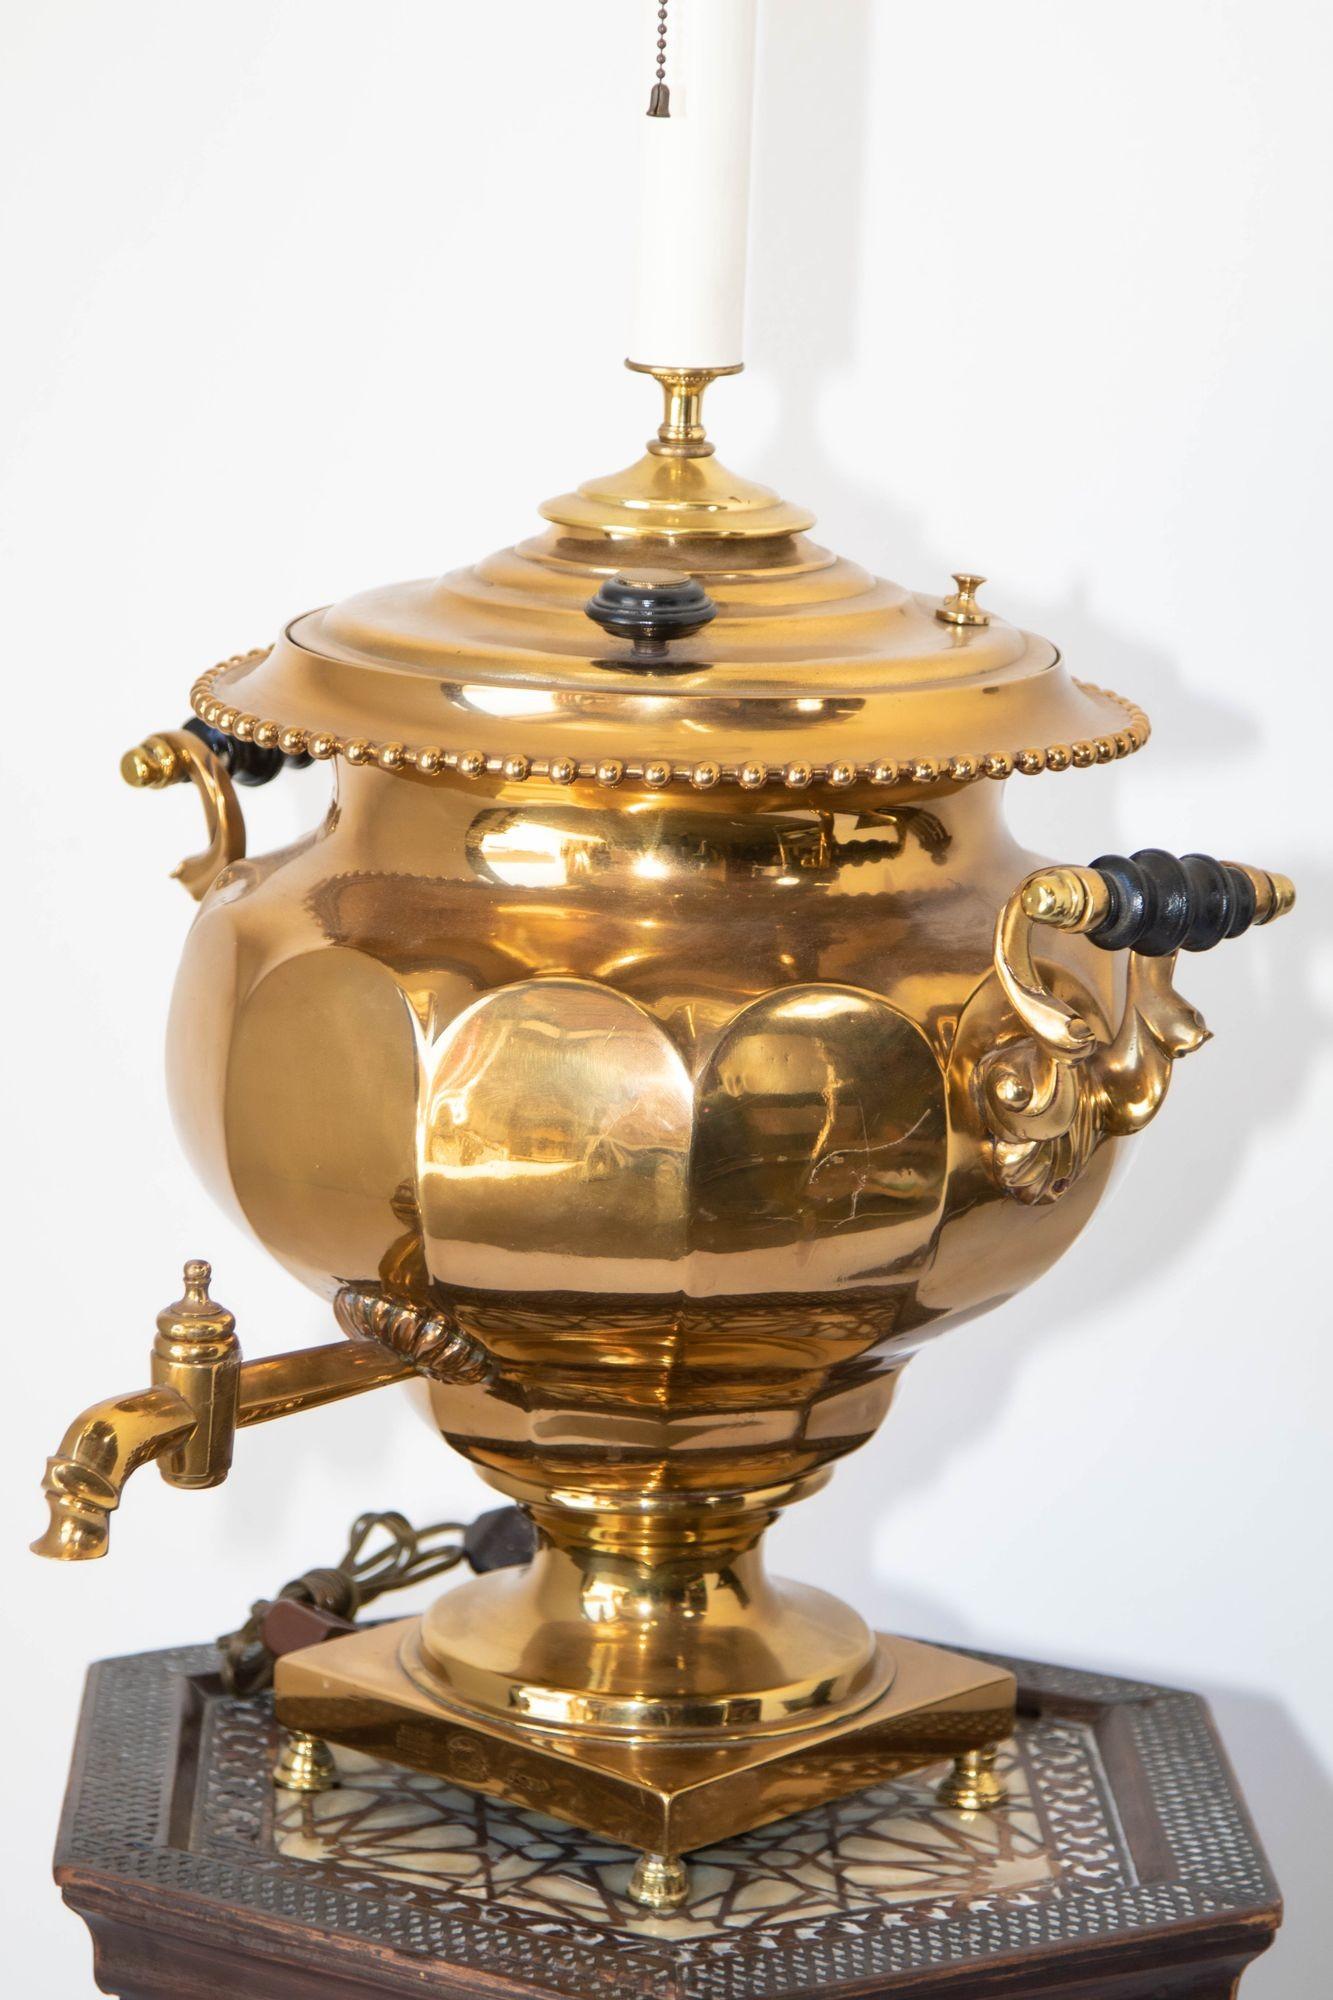 Große russische Samowar-Urne aus poliertem Messing als Lampe montiert.
Außergewöhnliche Qualität und Details mit übergroßen, gedrechselten Holzgriffen auf jeder Seite und einem hohen, doppelten Leuchtenkopf mit einem Messingknauf. 
Russischer